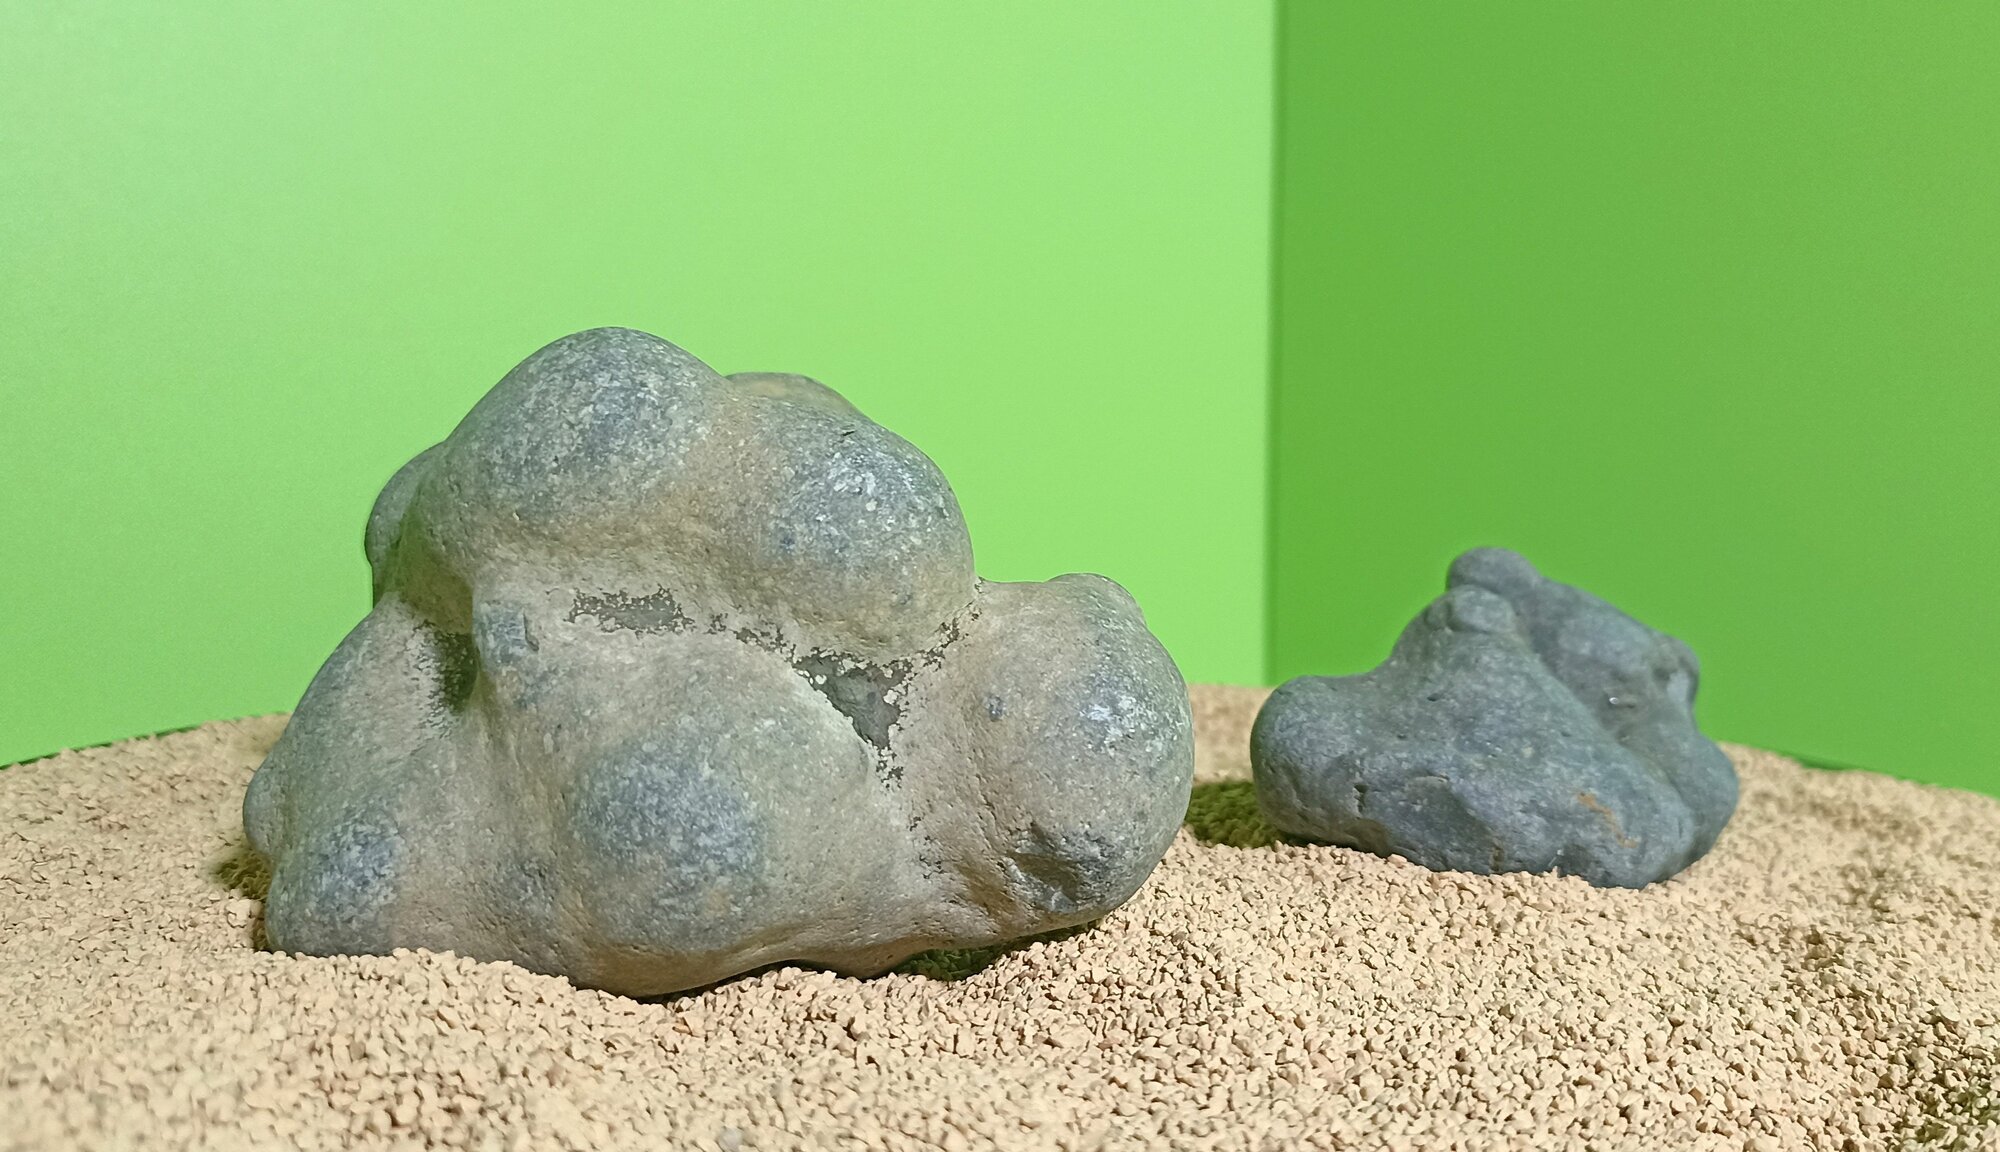 Декорация пузыри. Камень натуральный для аквариума, террариума, палюдариума и творчества